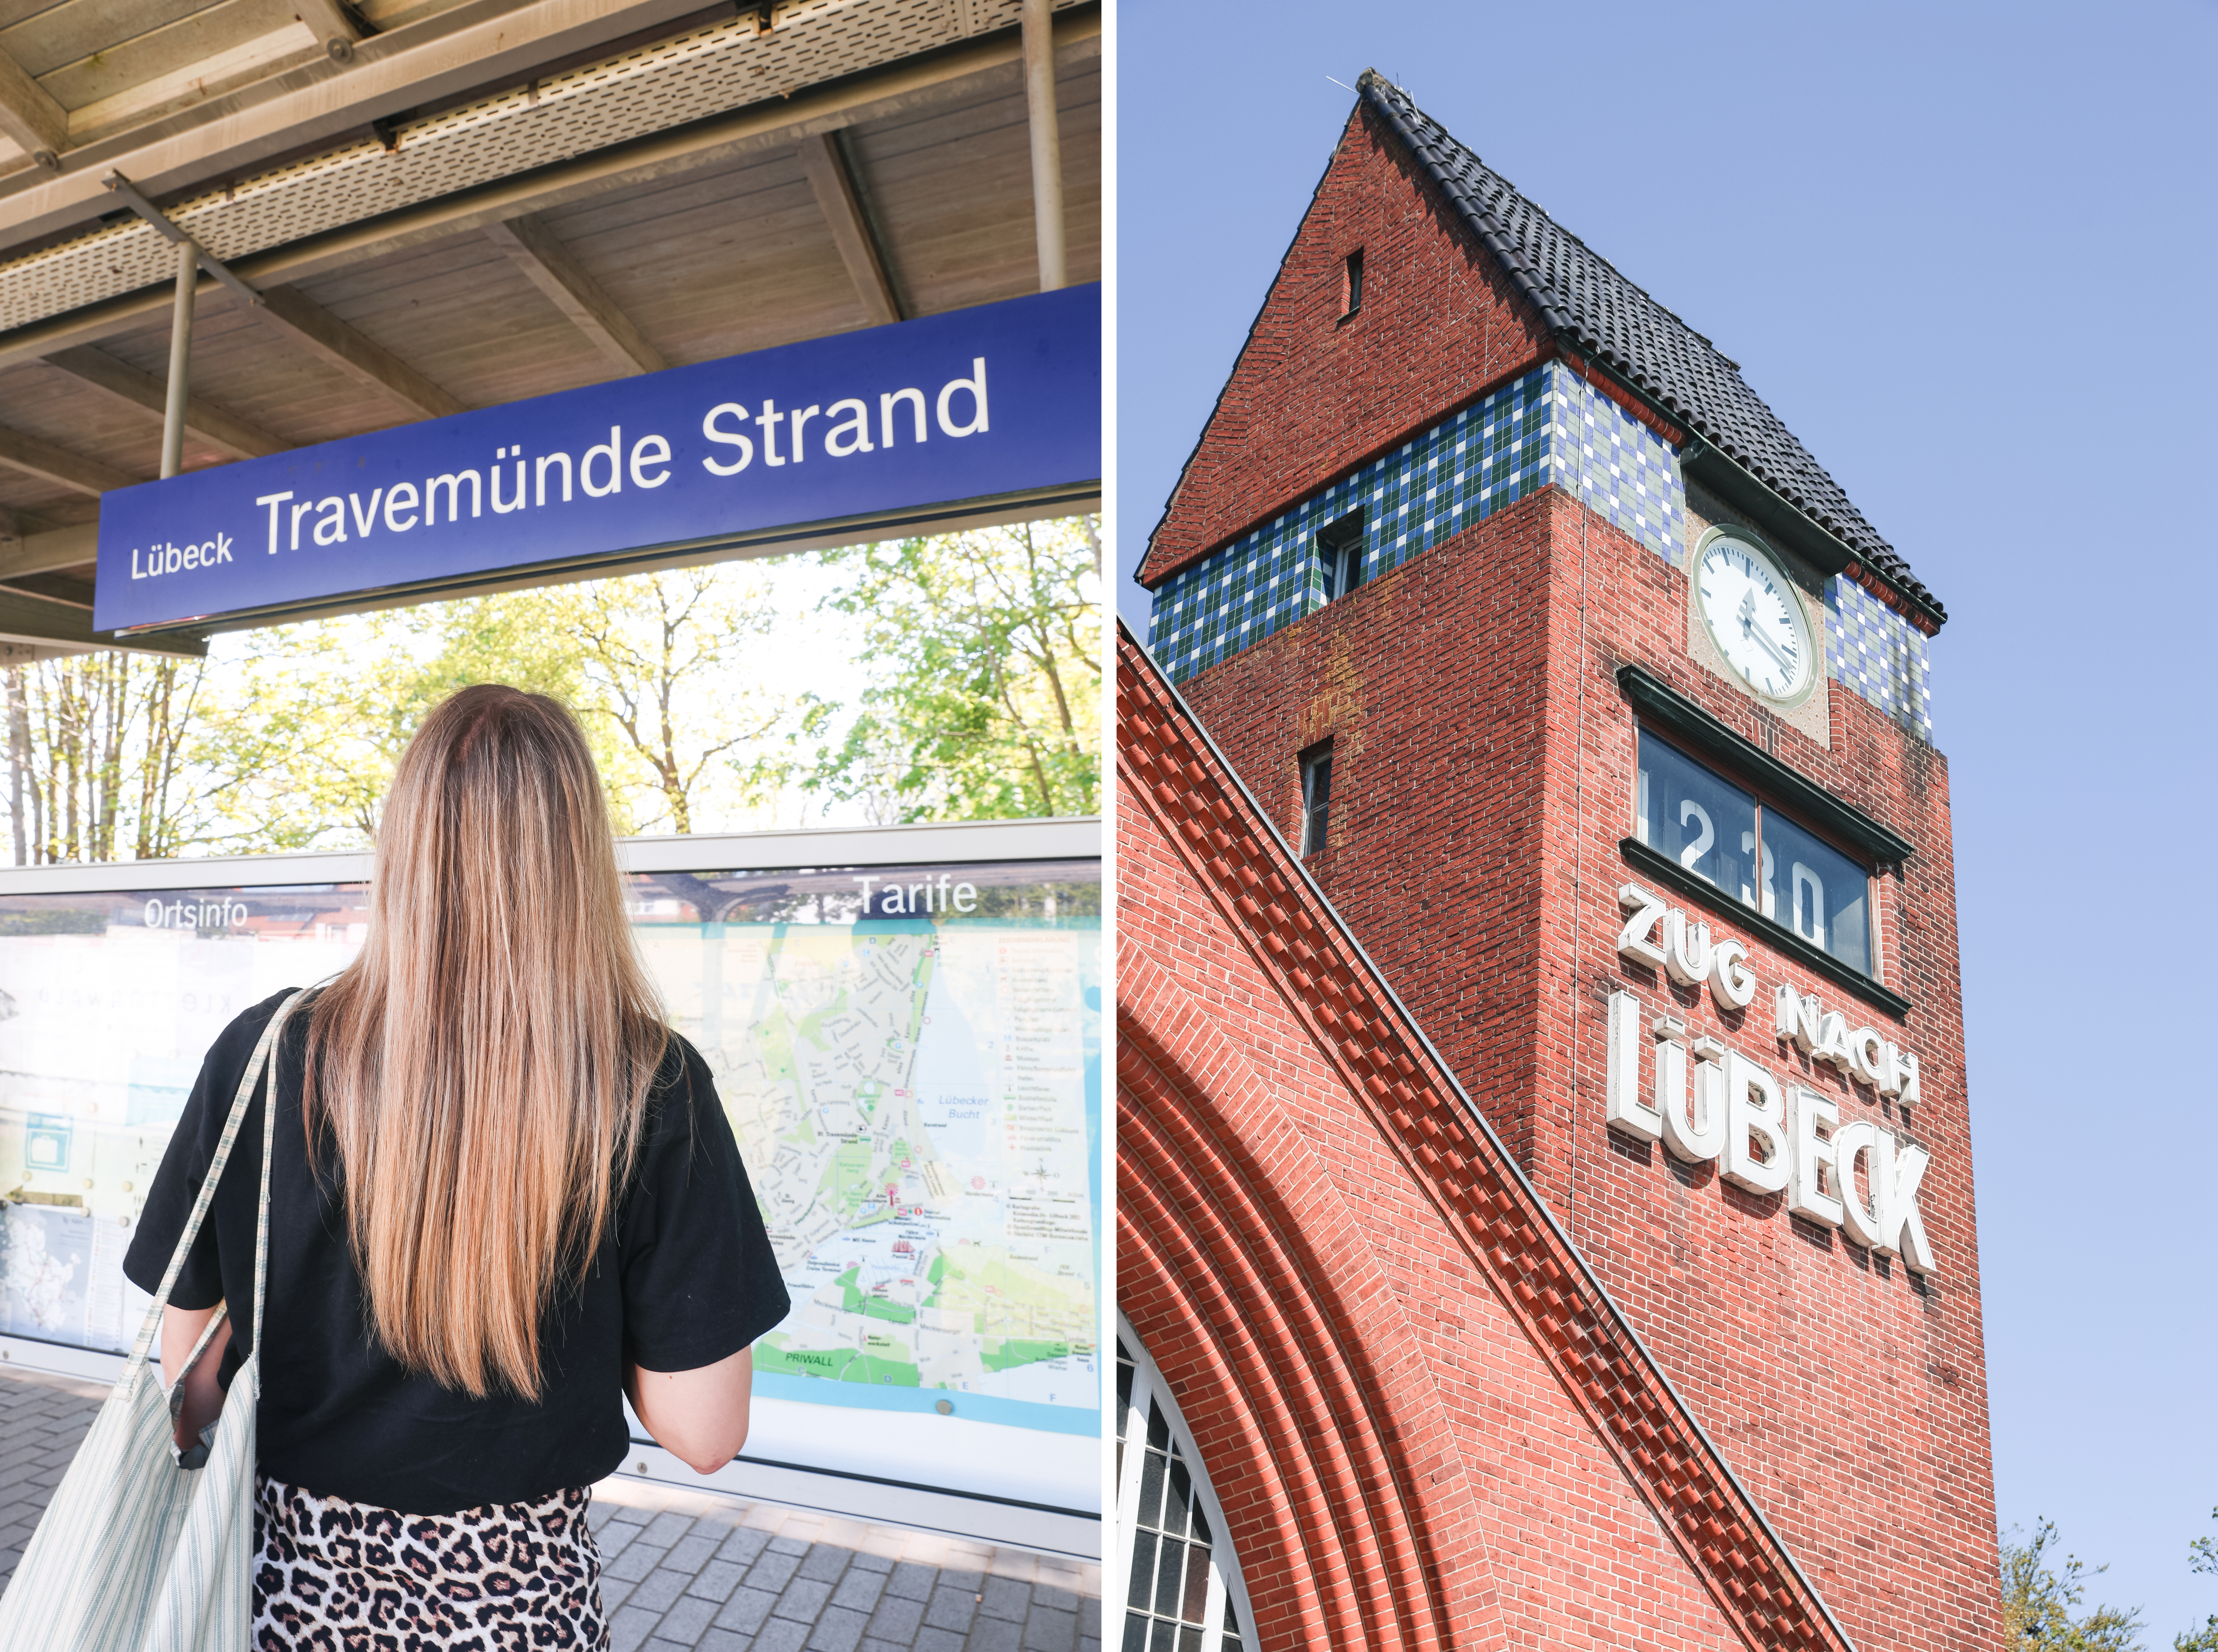 Finja T. blickt am Gleis des Bahnhofs Travemünde Strand auf ein blaues Schild mit der Aufschrift „Lübeck Travemünde Strand"